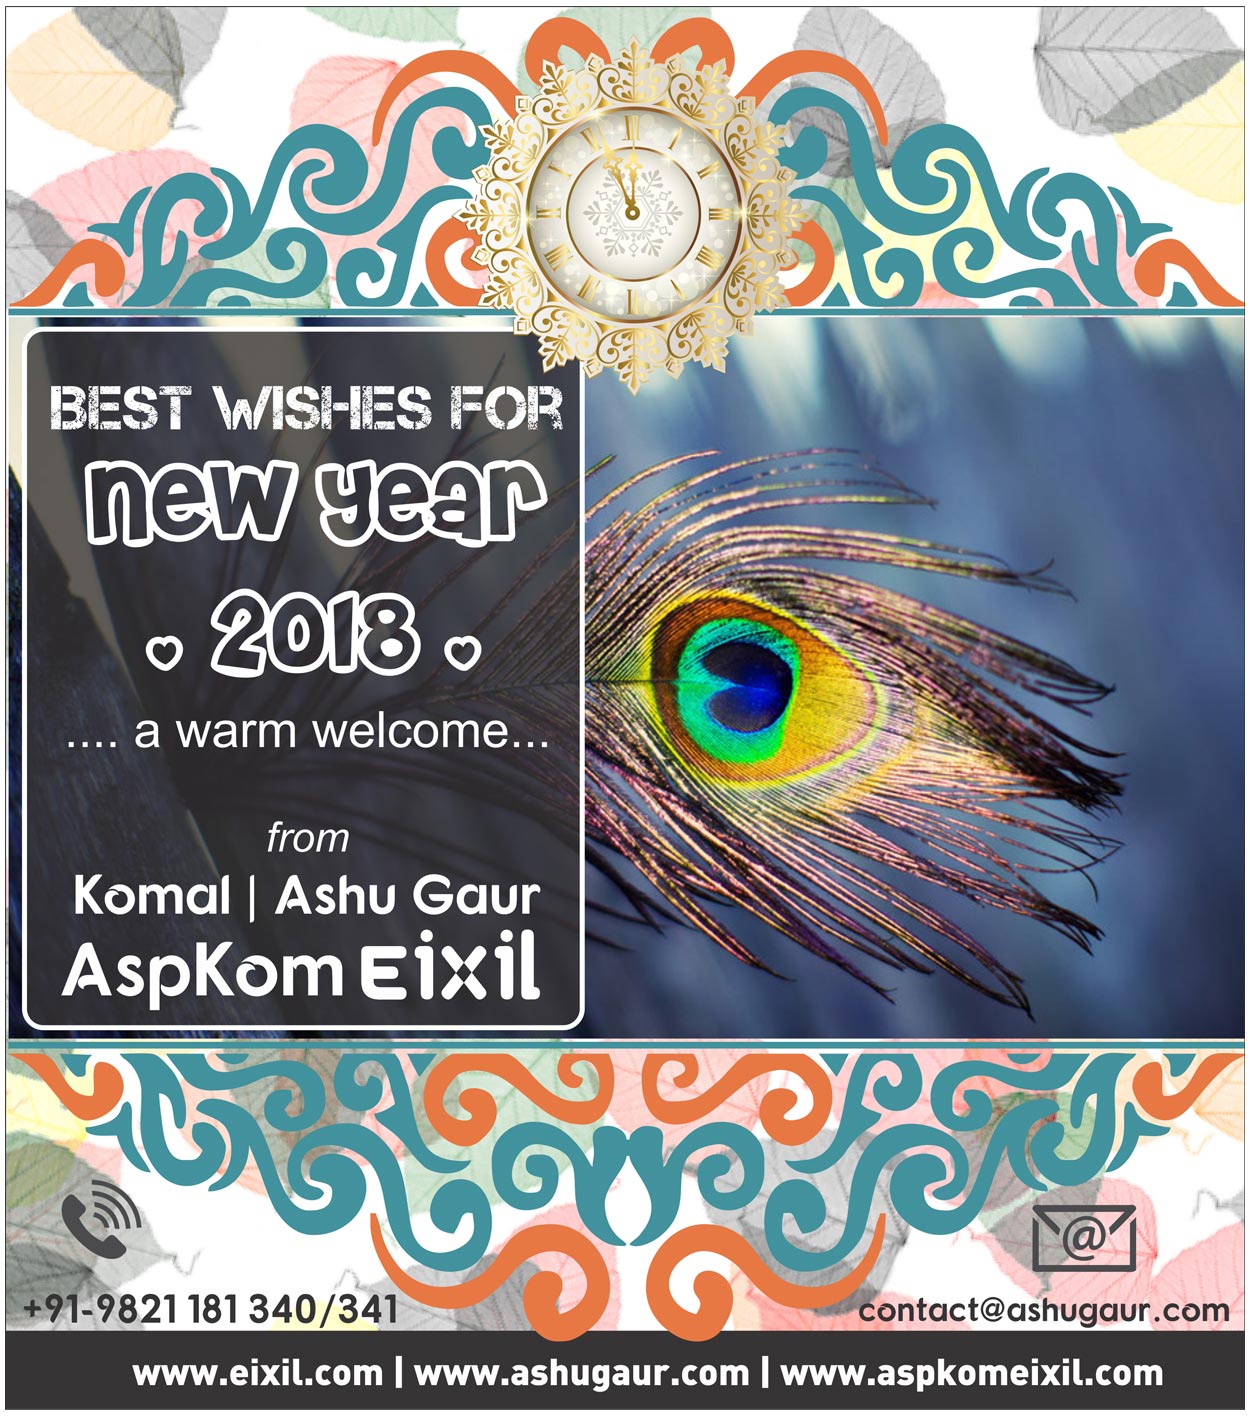 2018 New Year Wishes, Komal, Ashu Gaur